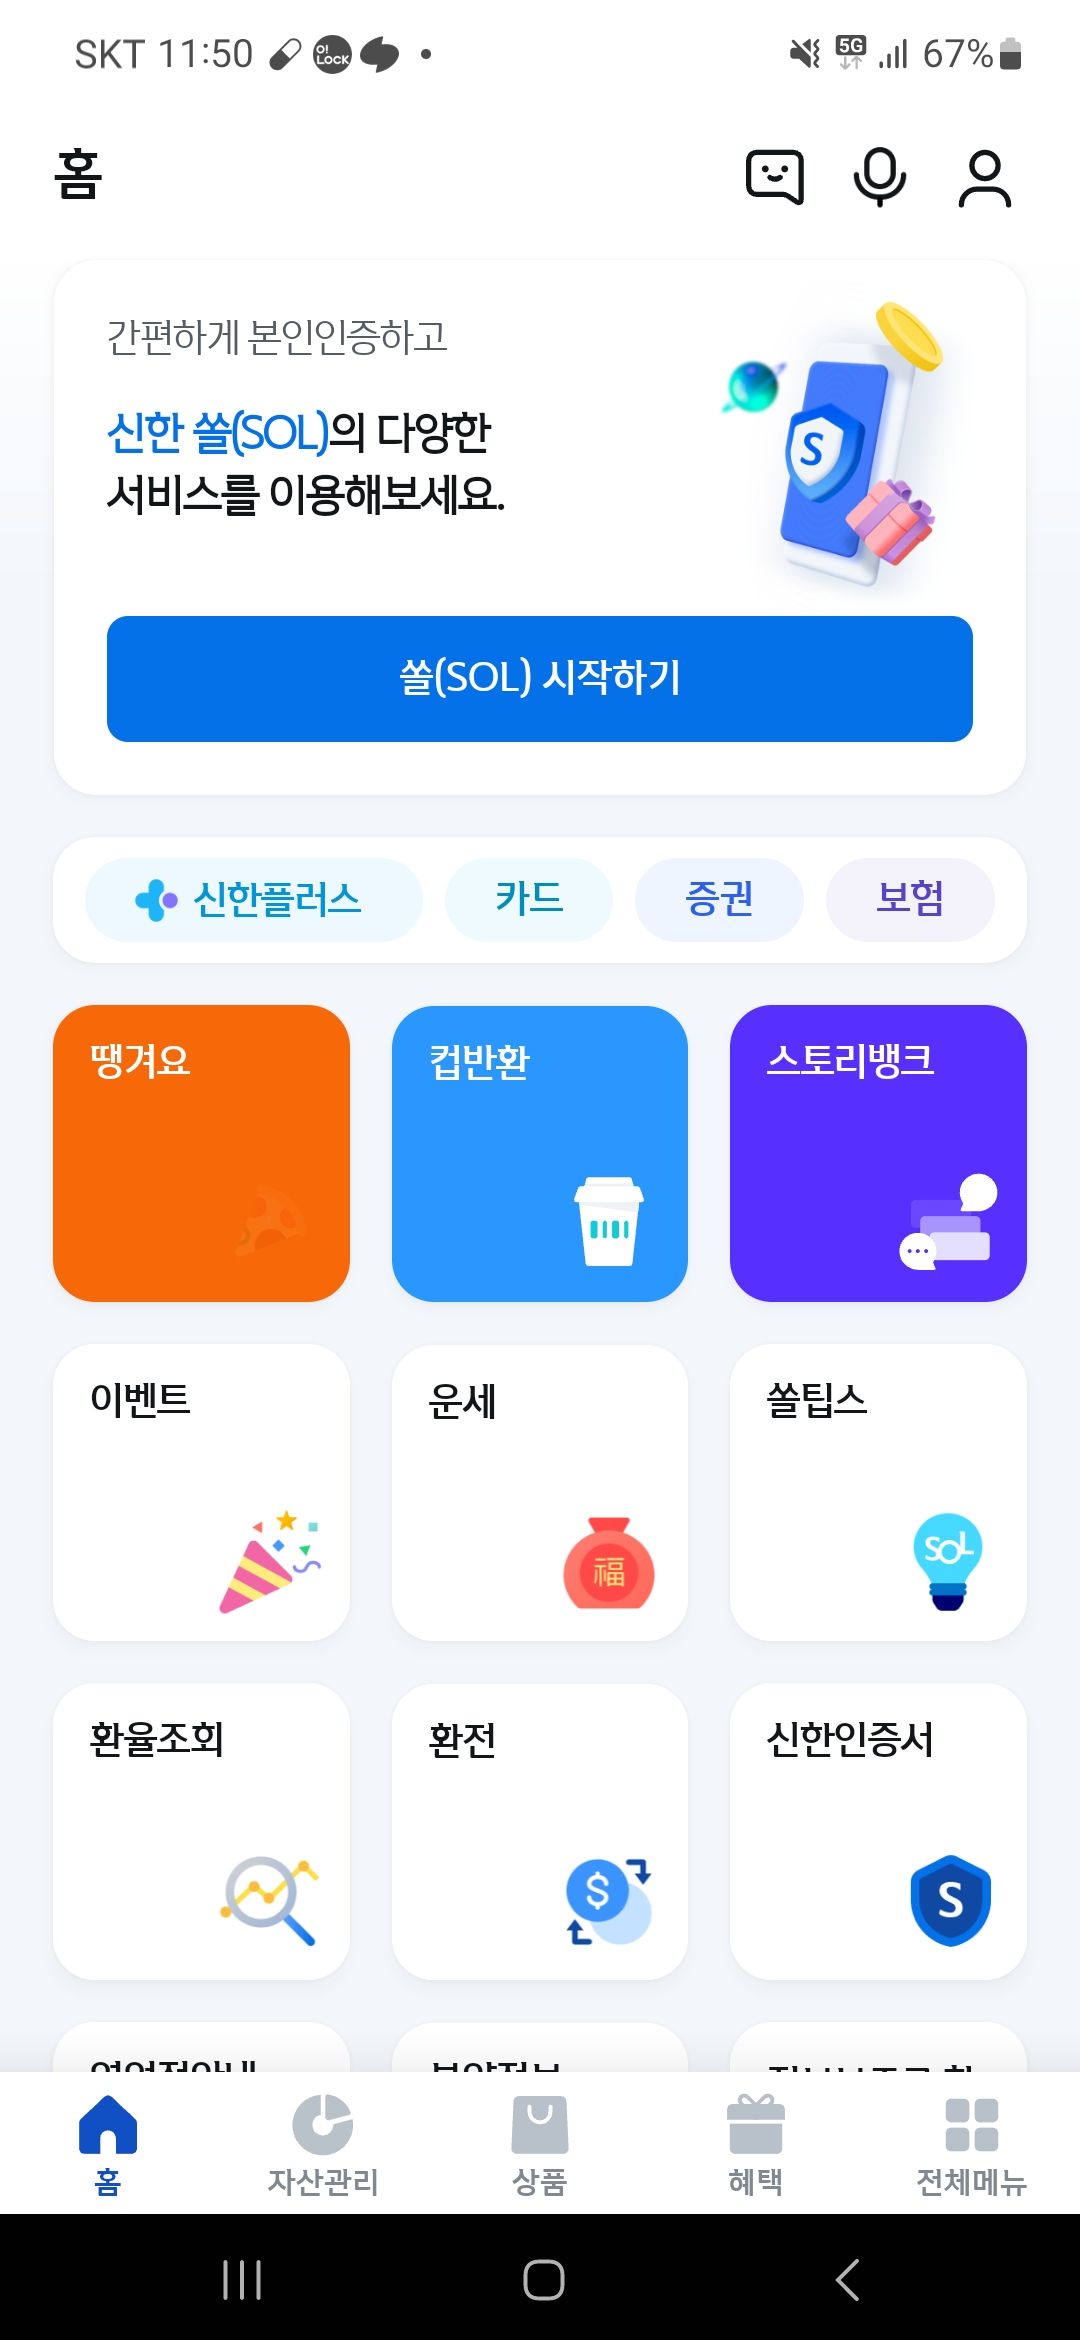 신한은행 앱 초기화면